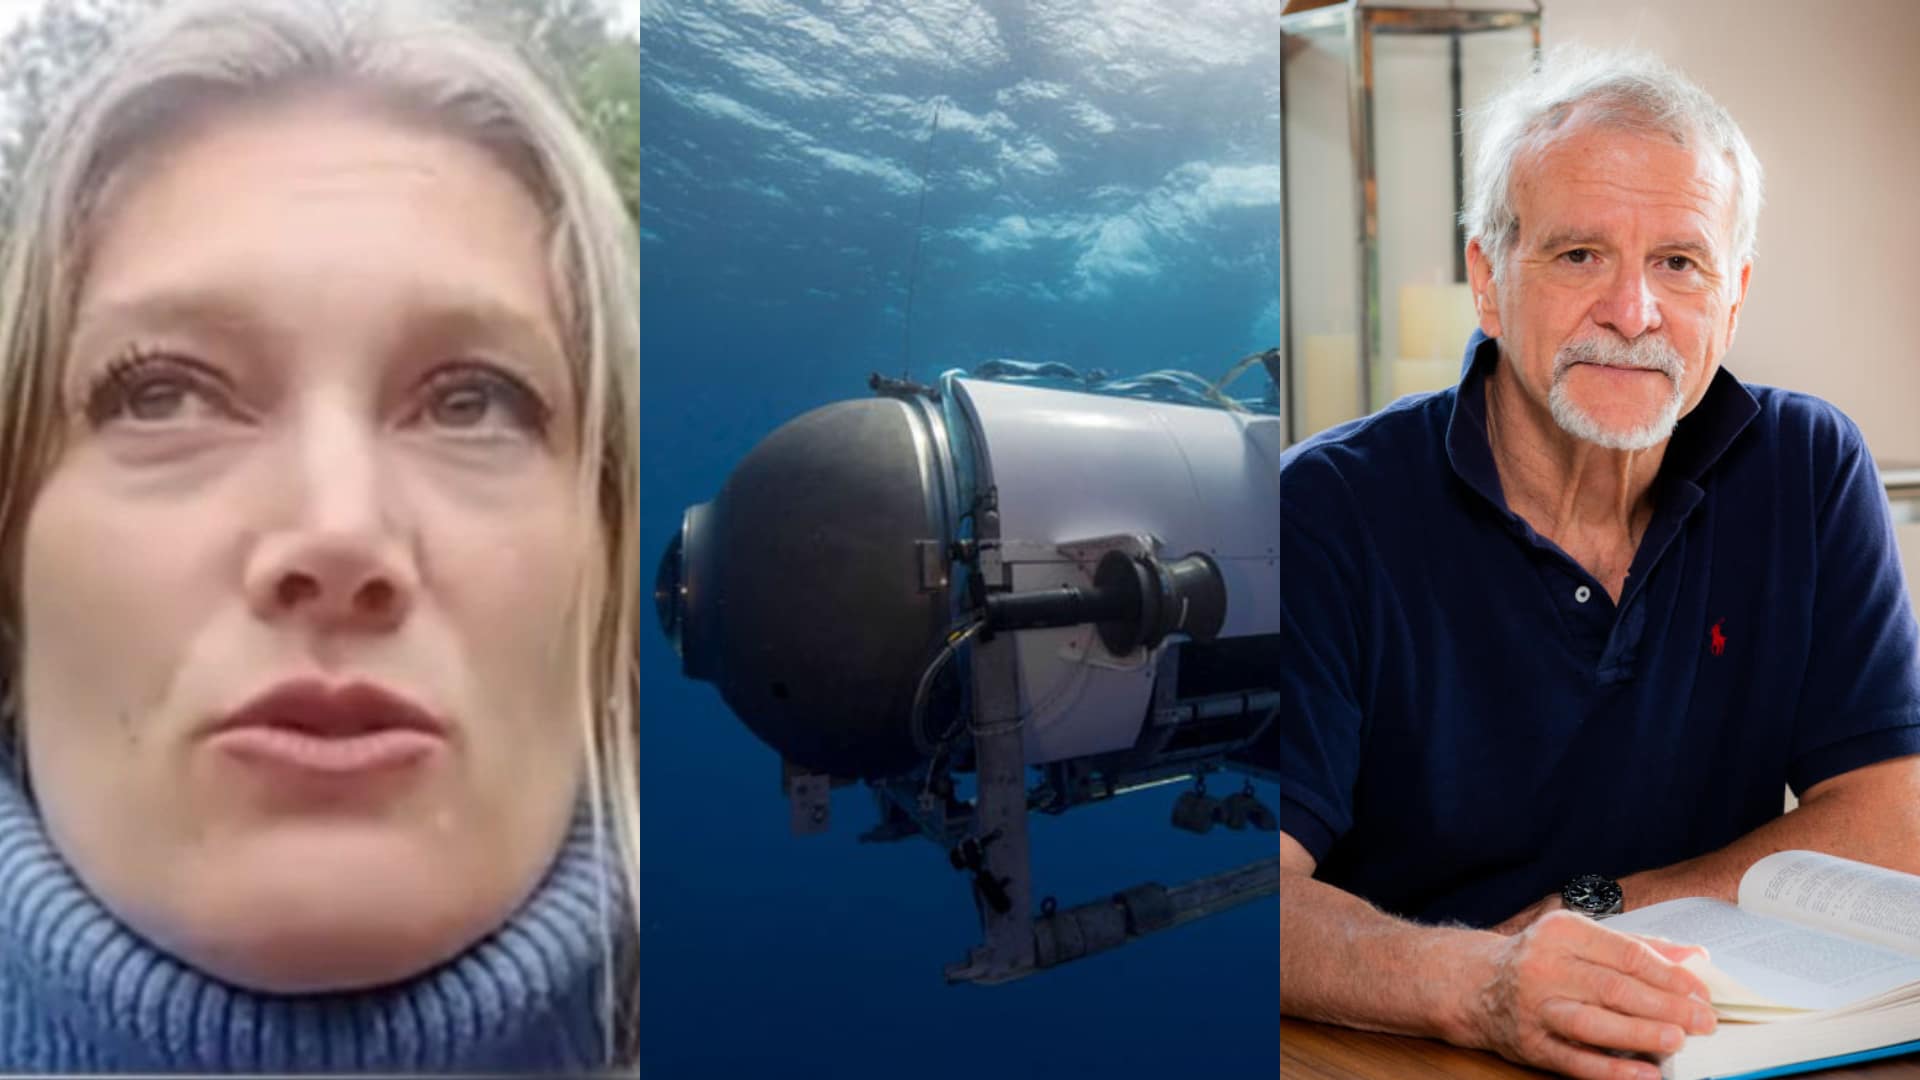 Tragédie Titan : le témoignage de la fille de Paul-Henri Nargeolet, le français décédé dans le sous-marin